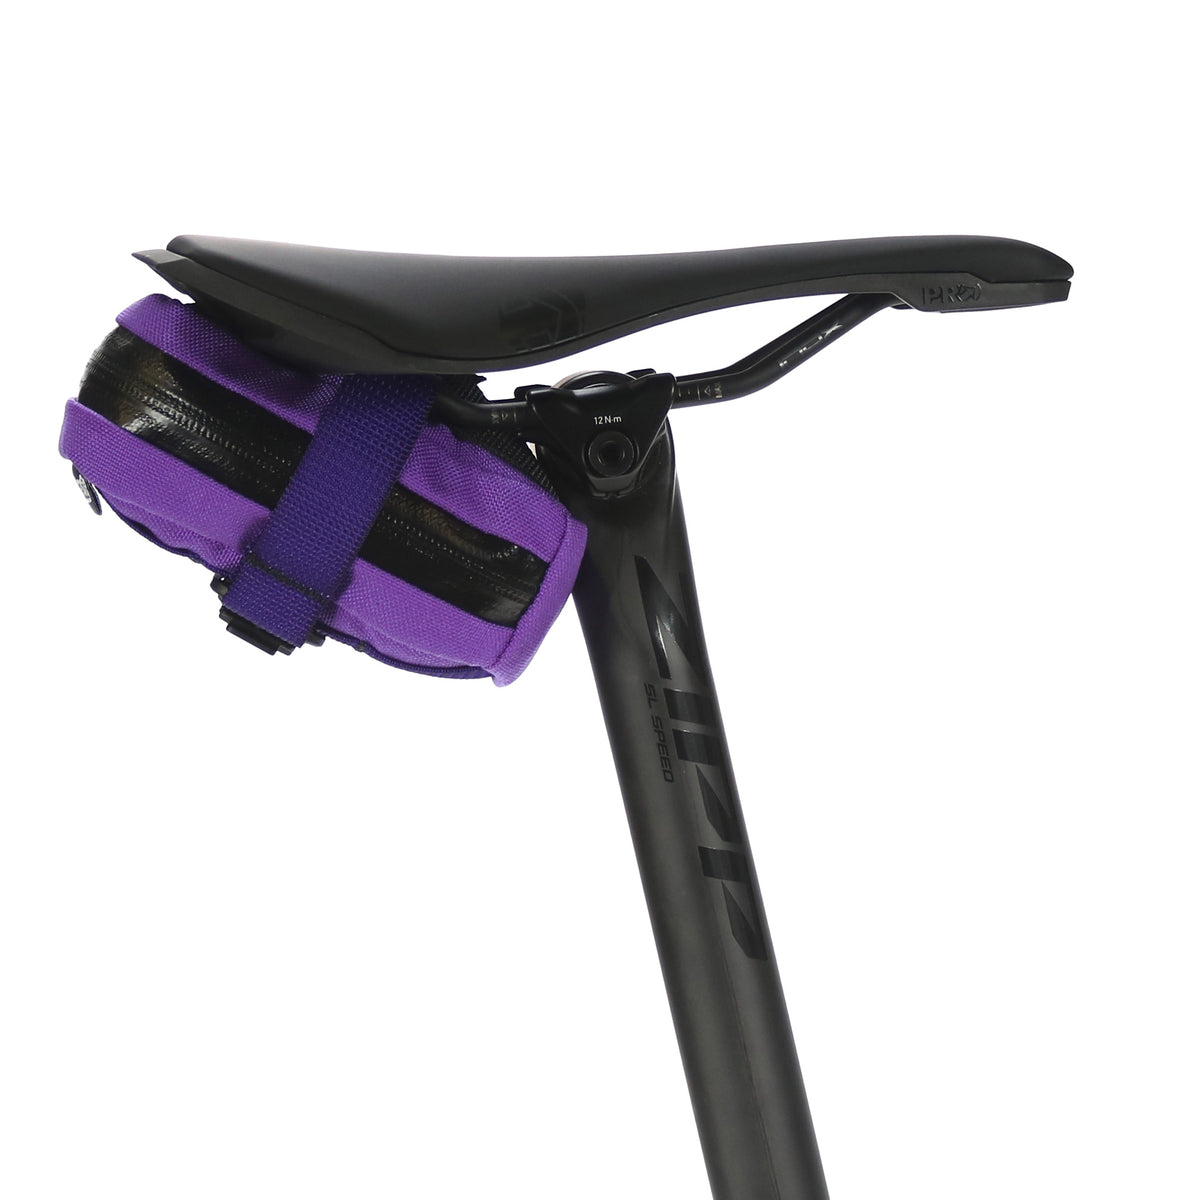 skingrowsback plan b cycling saddle bag purple